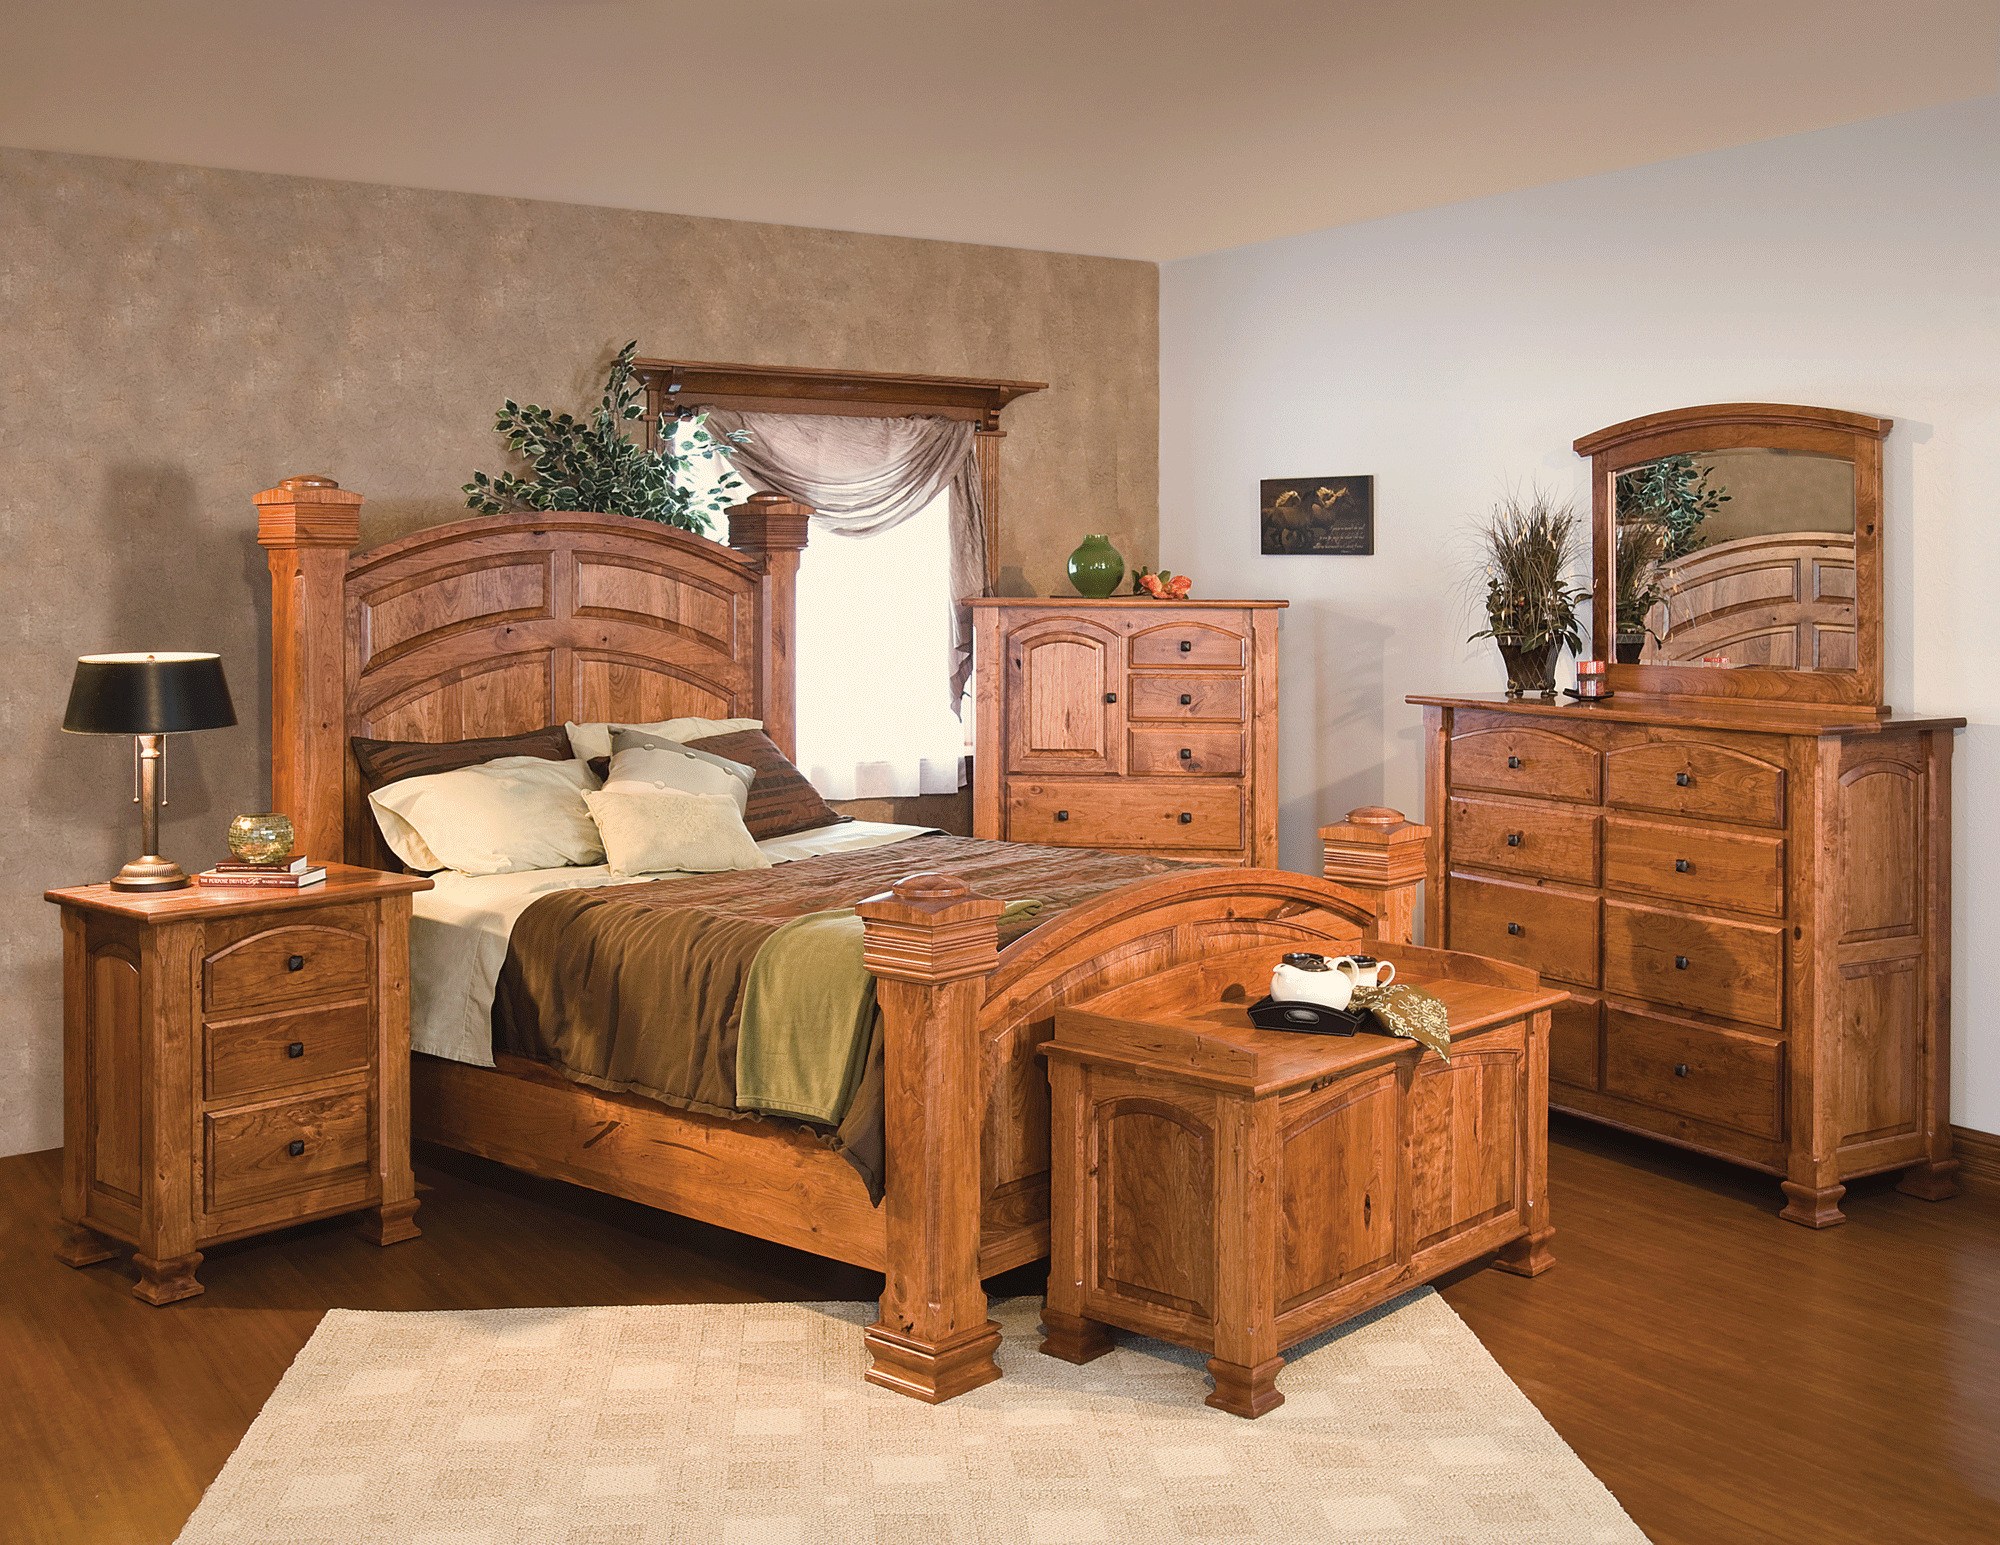 charleston style bedroom furniture